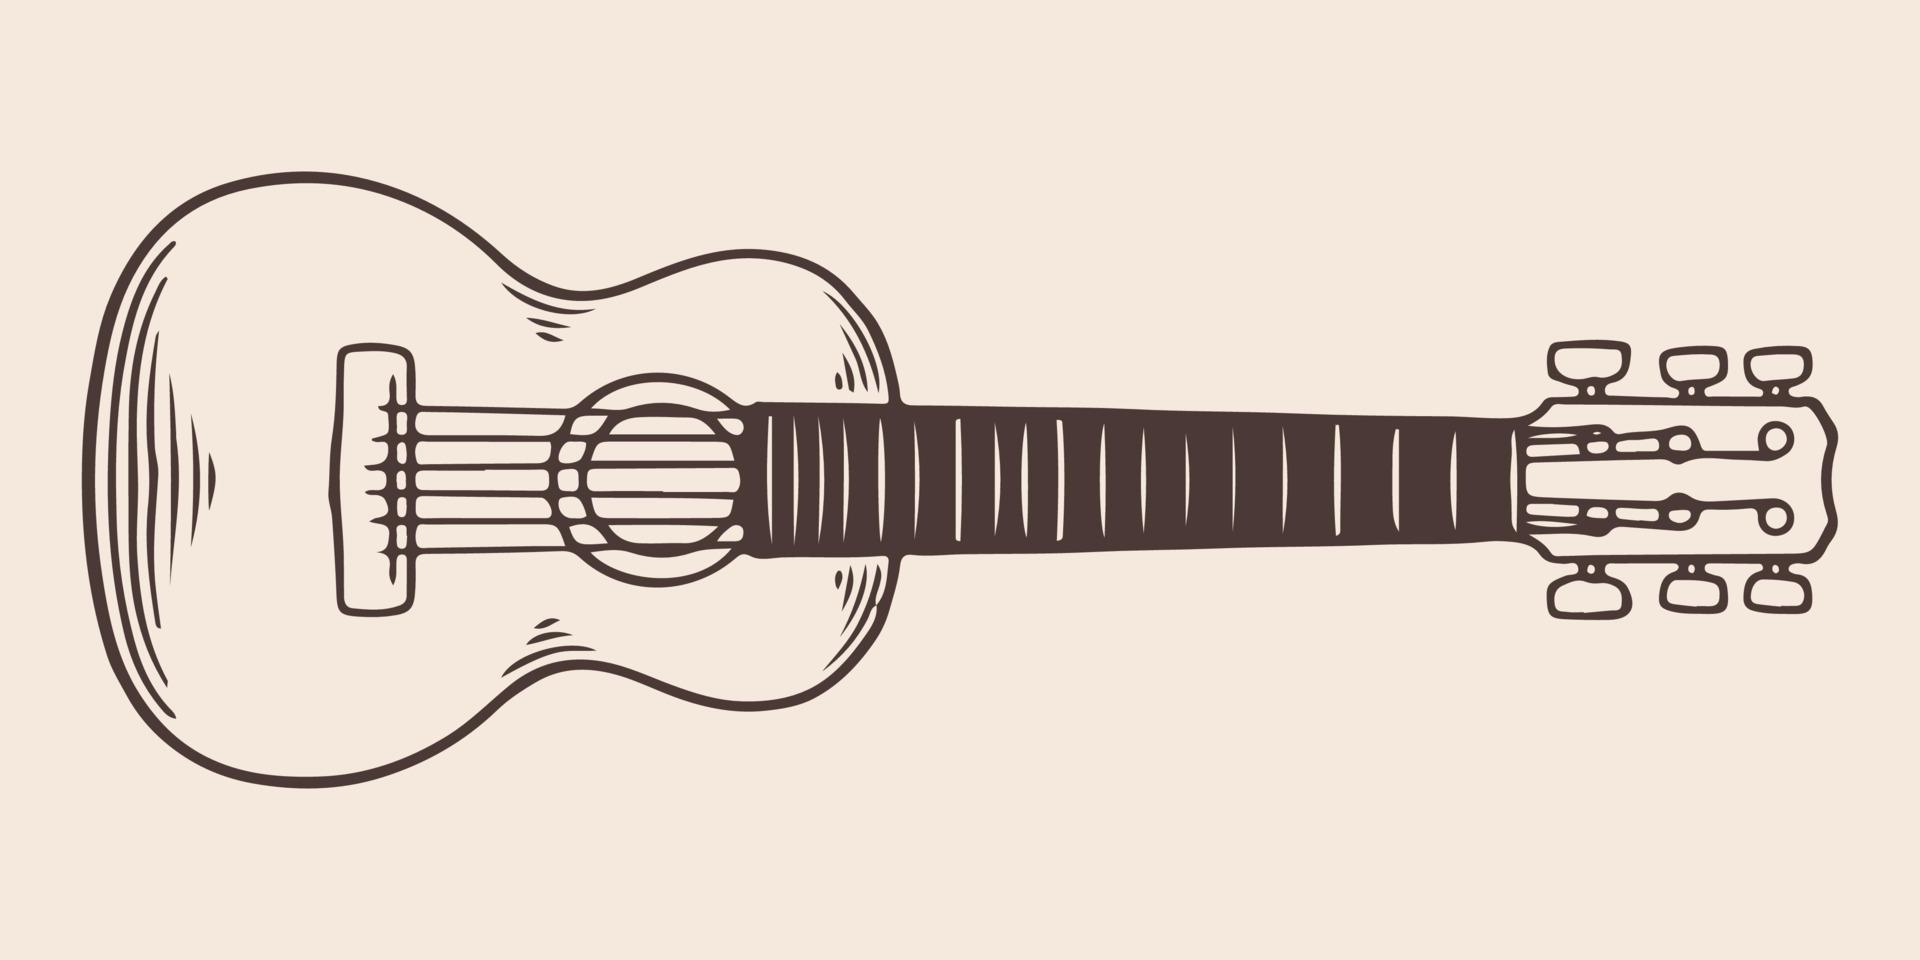 viajero de guitarra dibujado a mano vintage en estilo grabado vintage vector